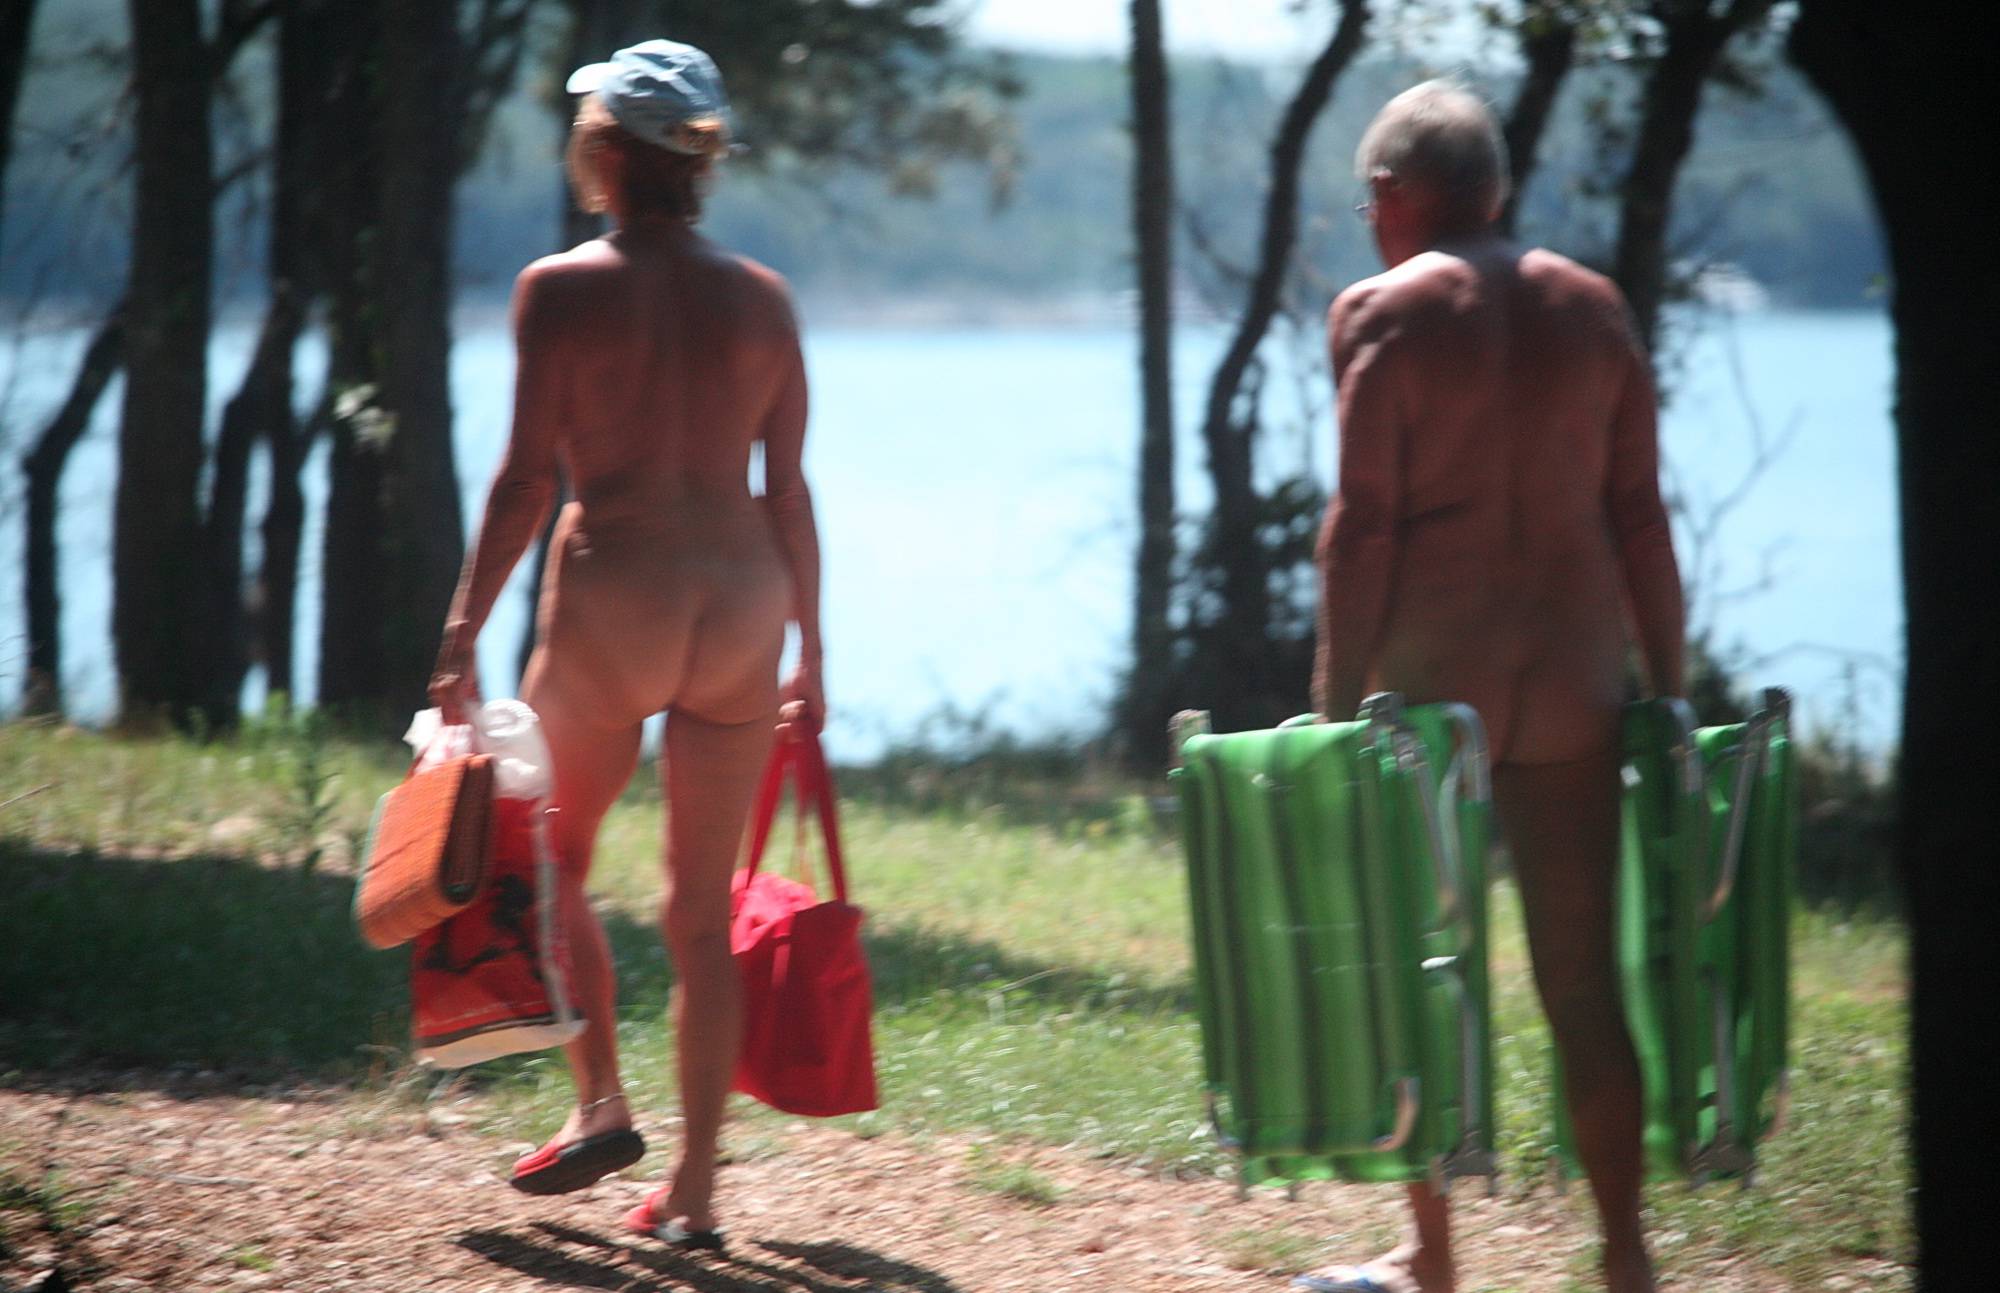 More Aged Nudists Walks - 1